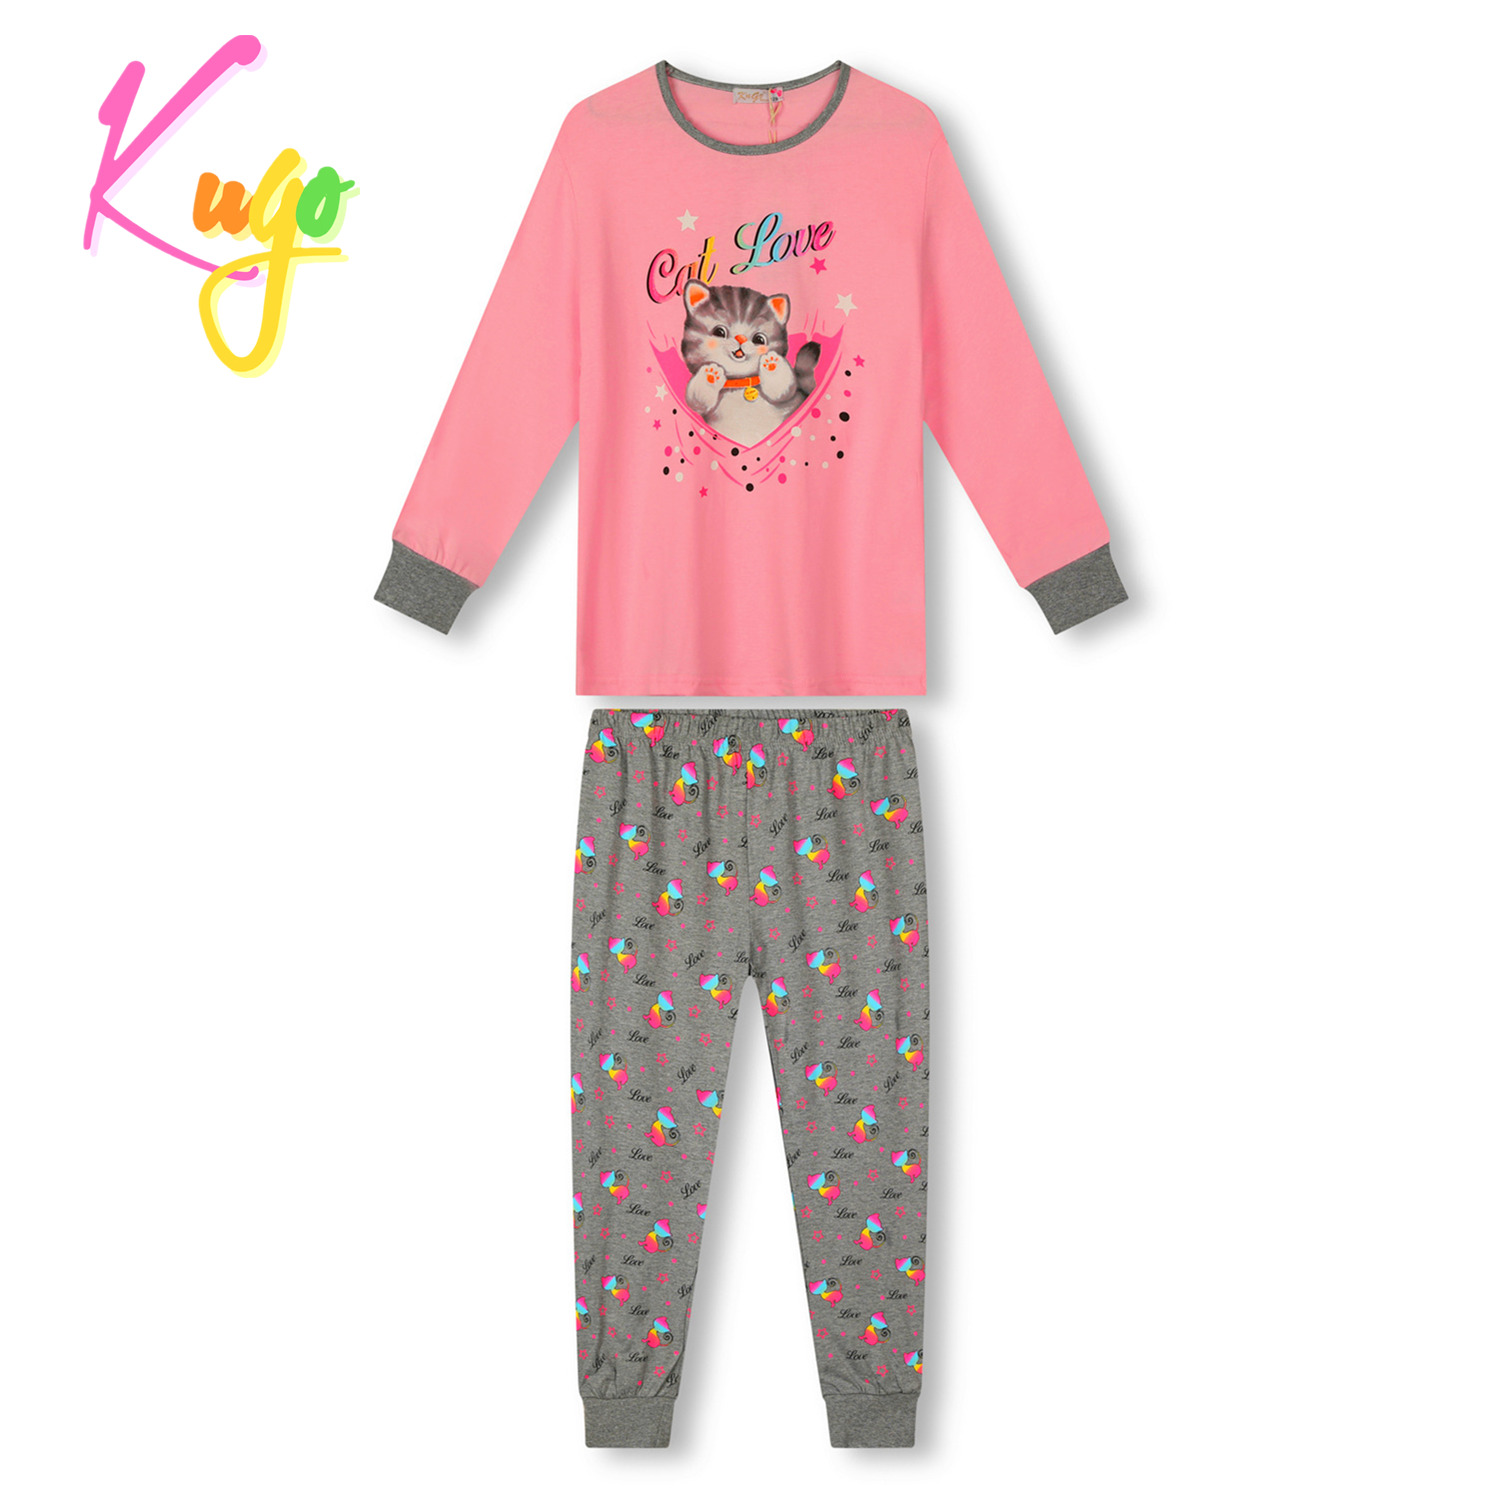 Dívčí pyžamo - KUGO MP1753, světle růžová / šedá Barva: Růžová, Velikost: 98